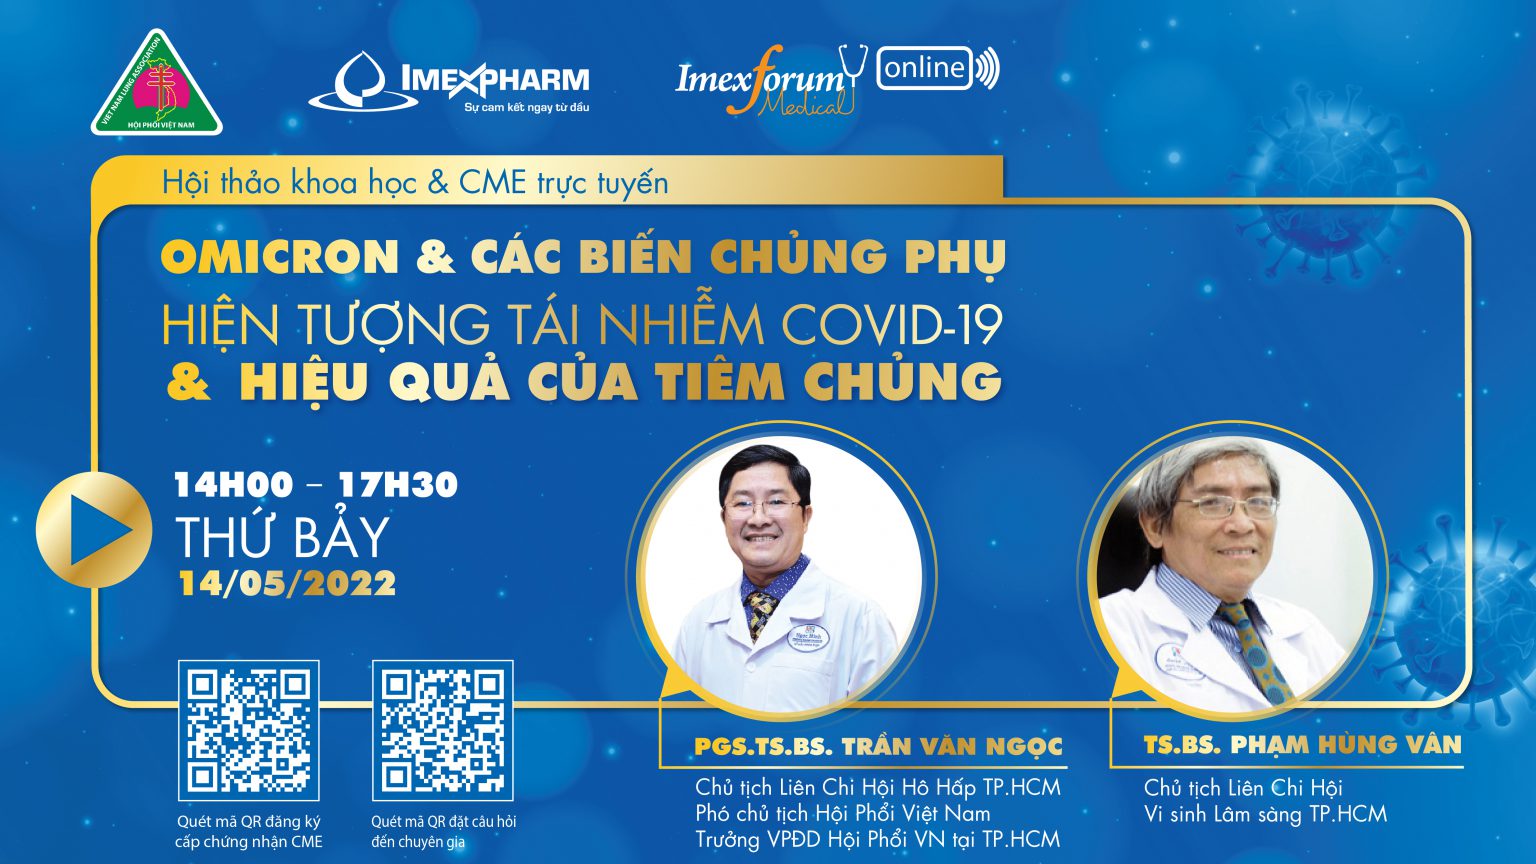 Imexforum Medical online – Chương trình Diễn đàn y khoa về lĩnh vực chăm sóc sức khỏe của Hội Phổi Việt Nam, Liên chi hội hô hấp TP.HCM